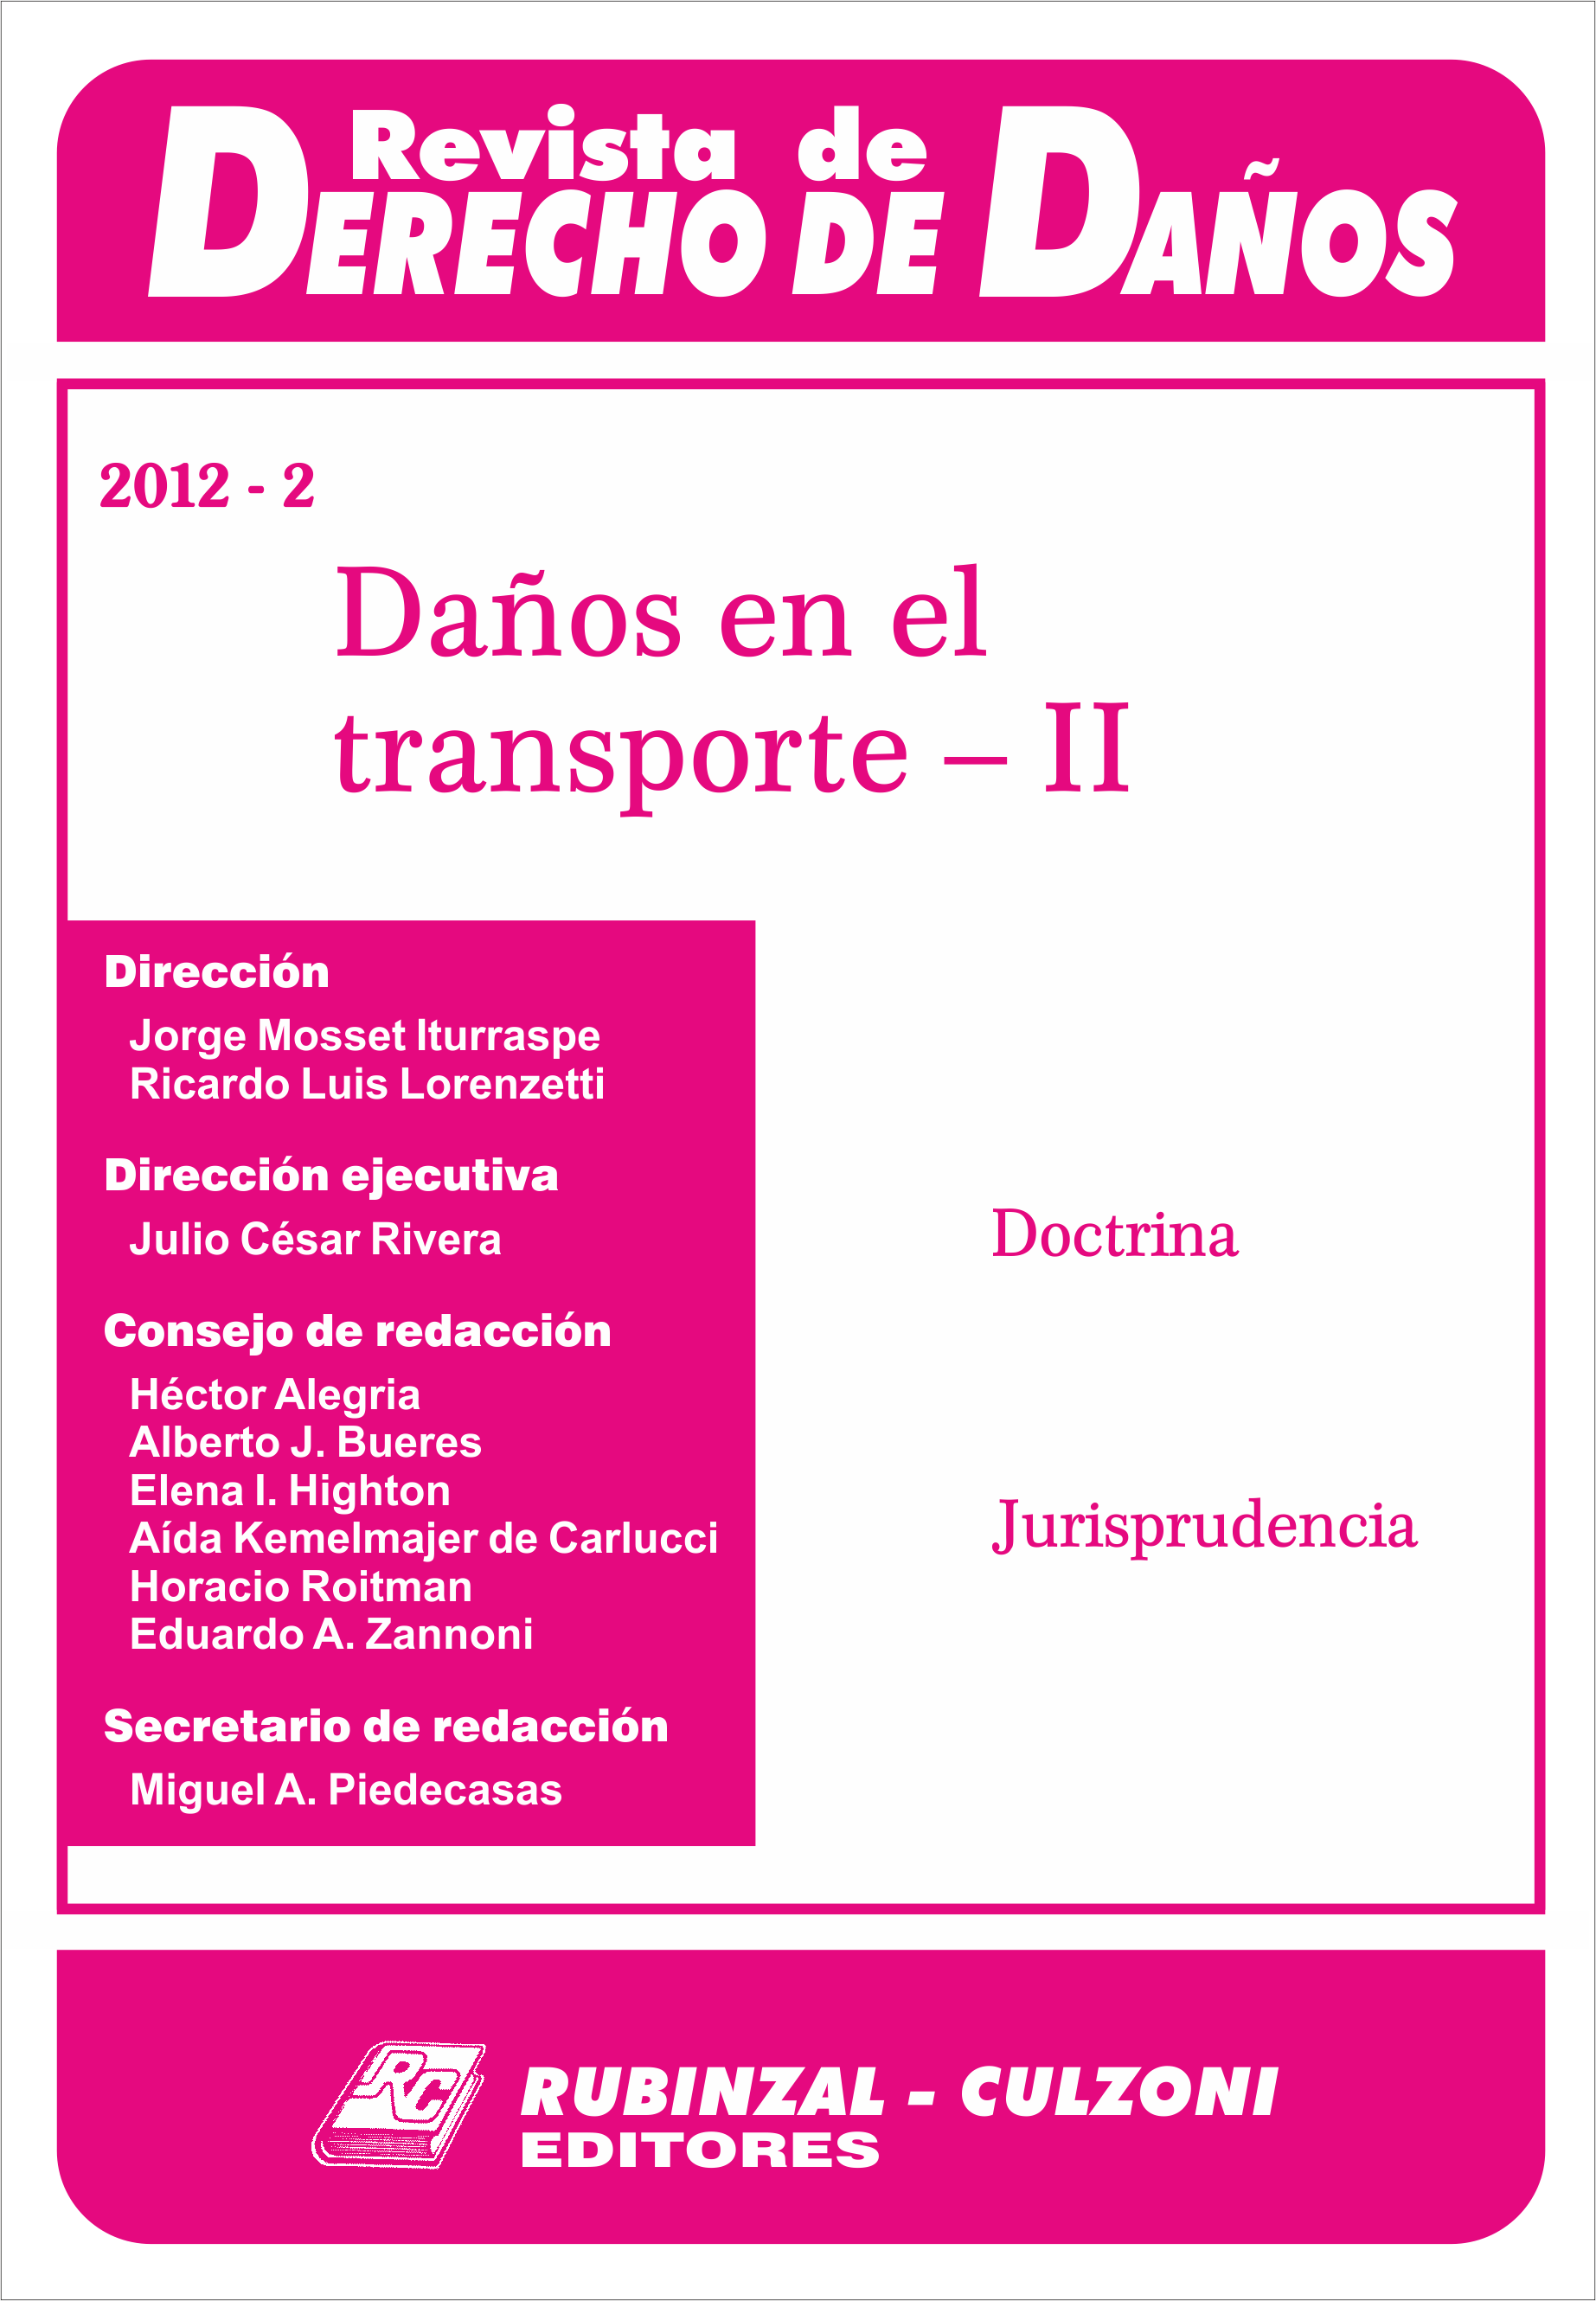 Revista de Derecho de Daños - Daños en el transporte - II.